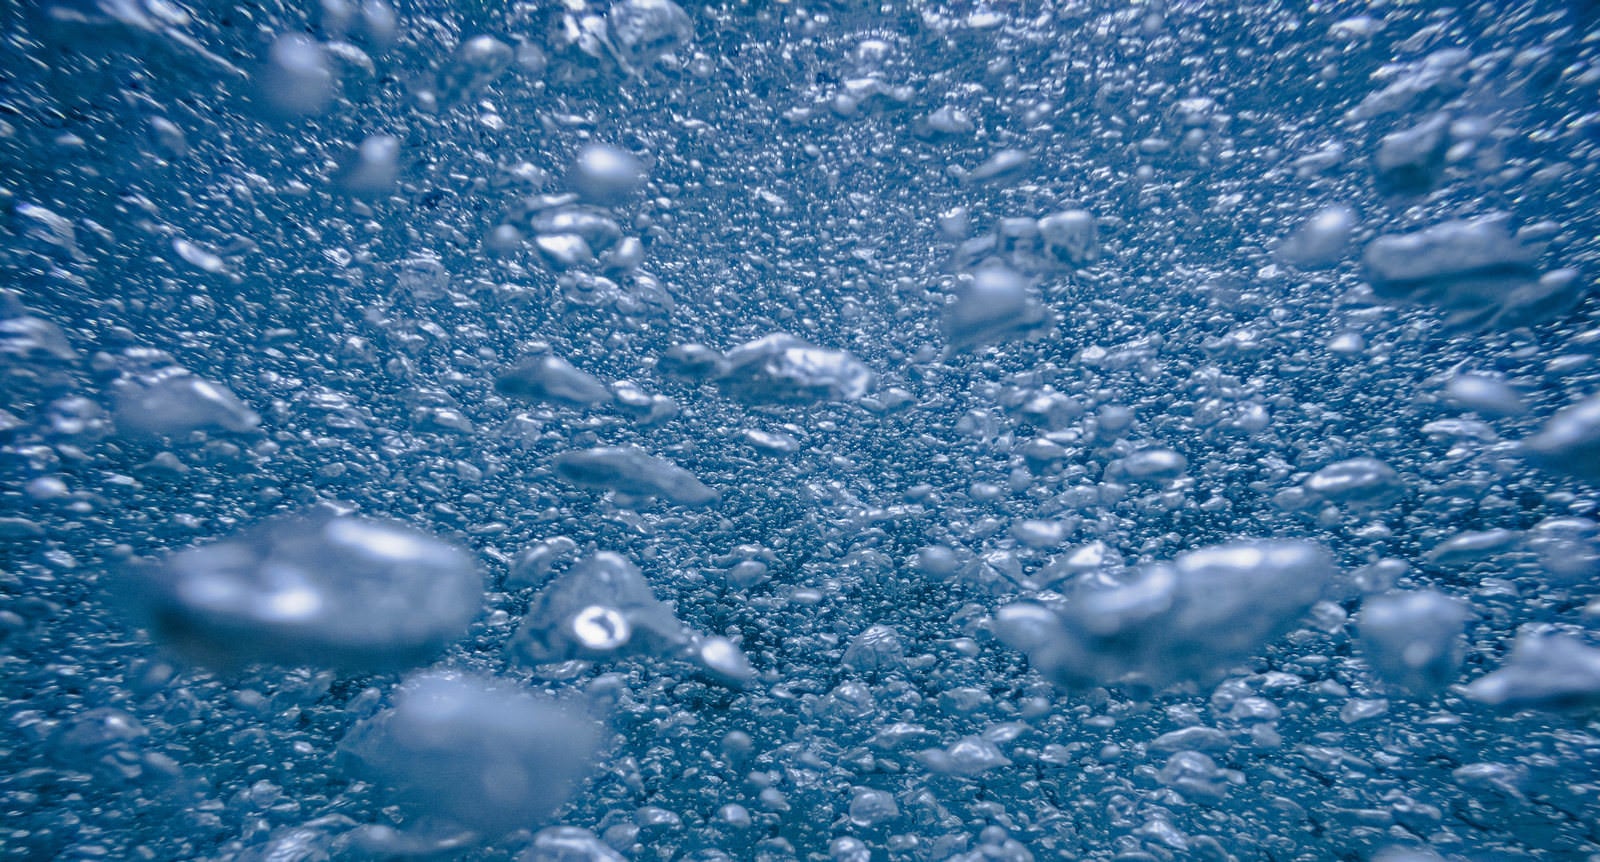 「水中に浮かぶ無数の泡」の写真